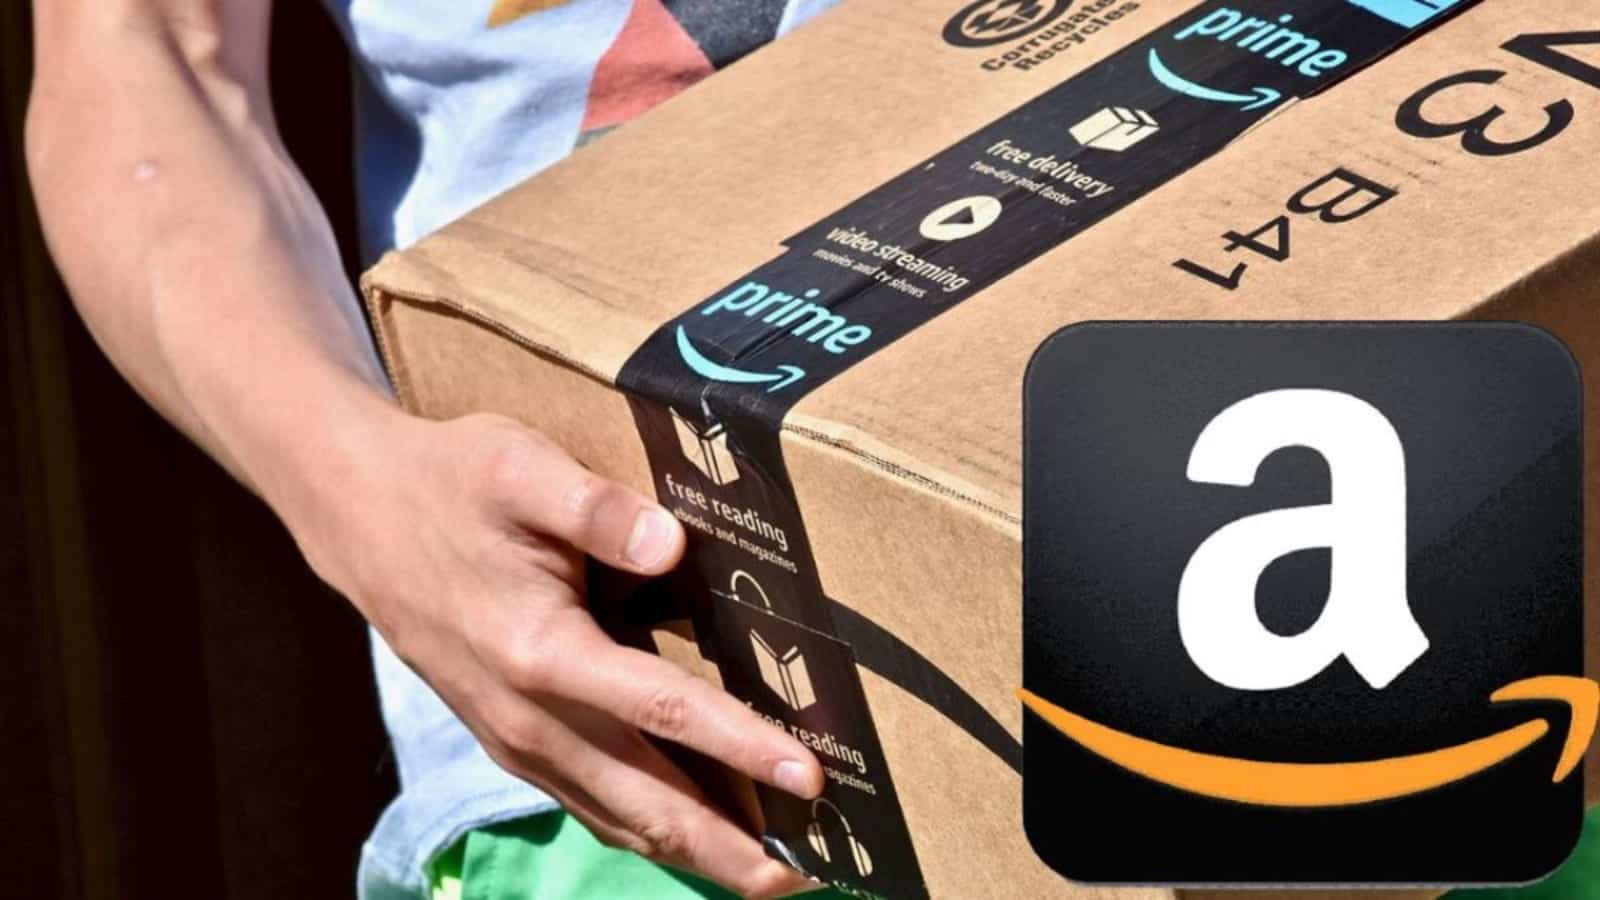 Amazon, offerte di PRIMAVERA: smart TV e iPhone in REGALO